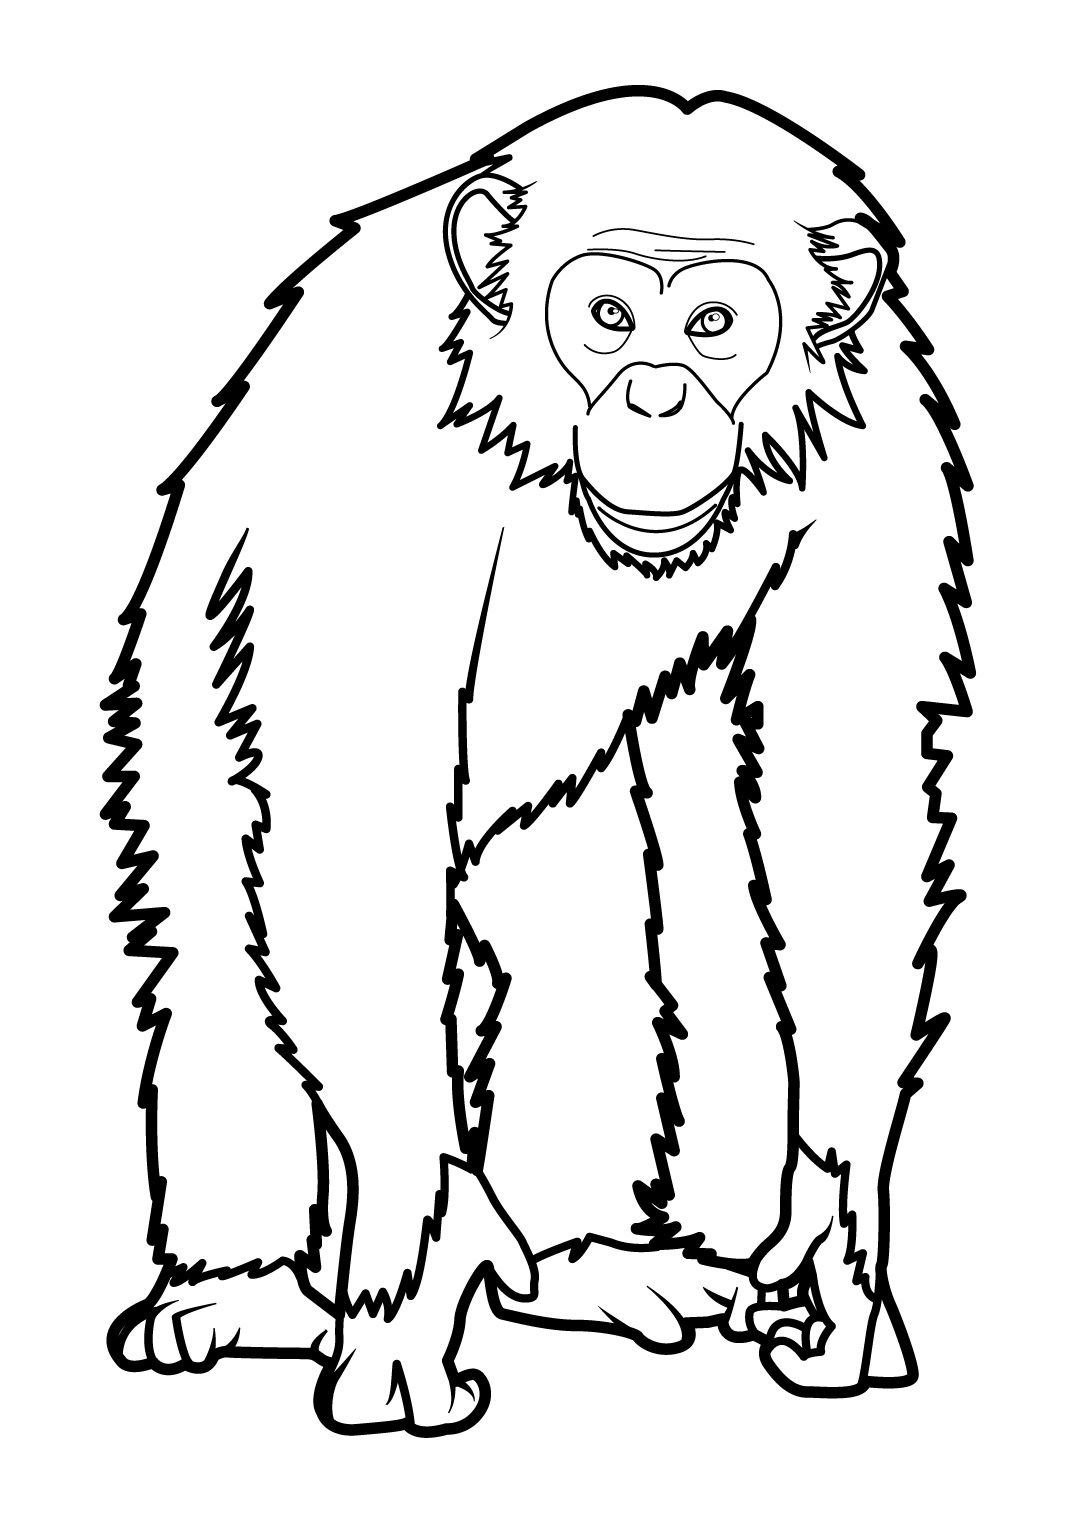 Рисунки обезьянки для срисовки - 59 фото